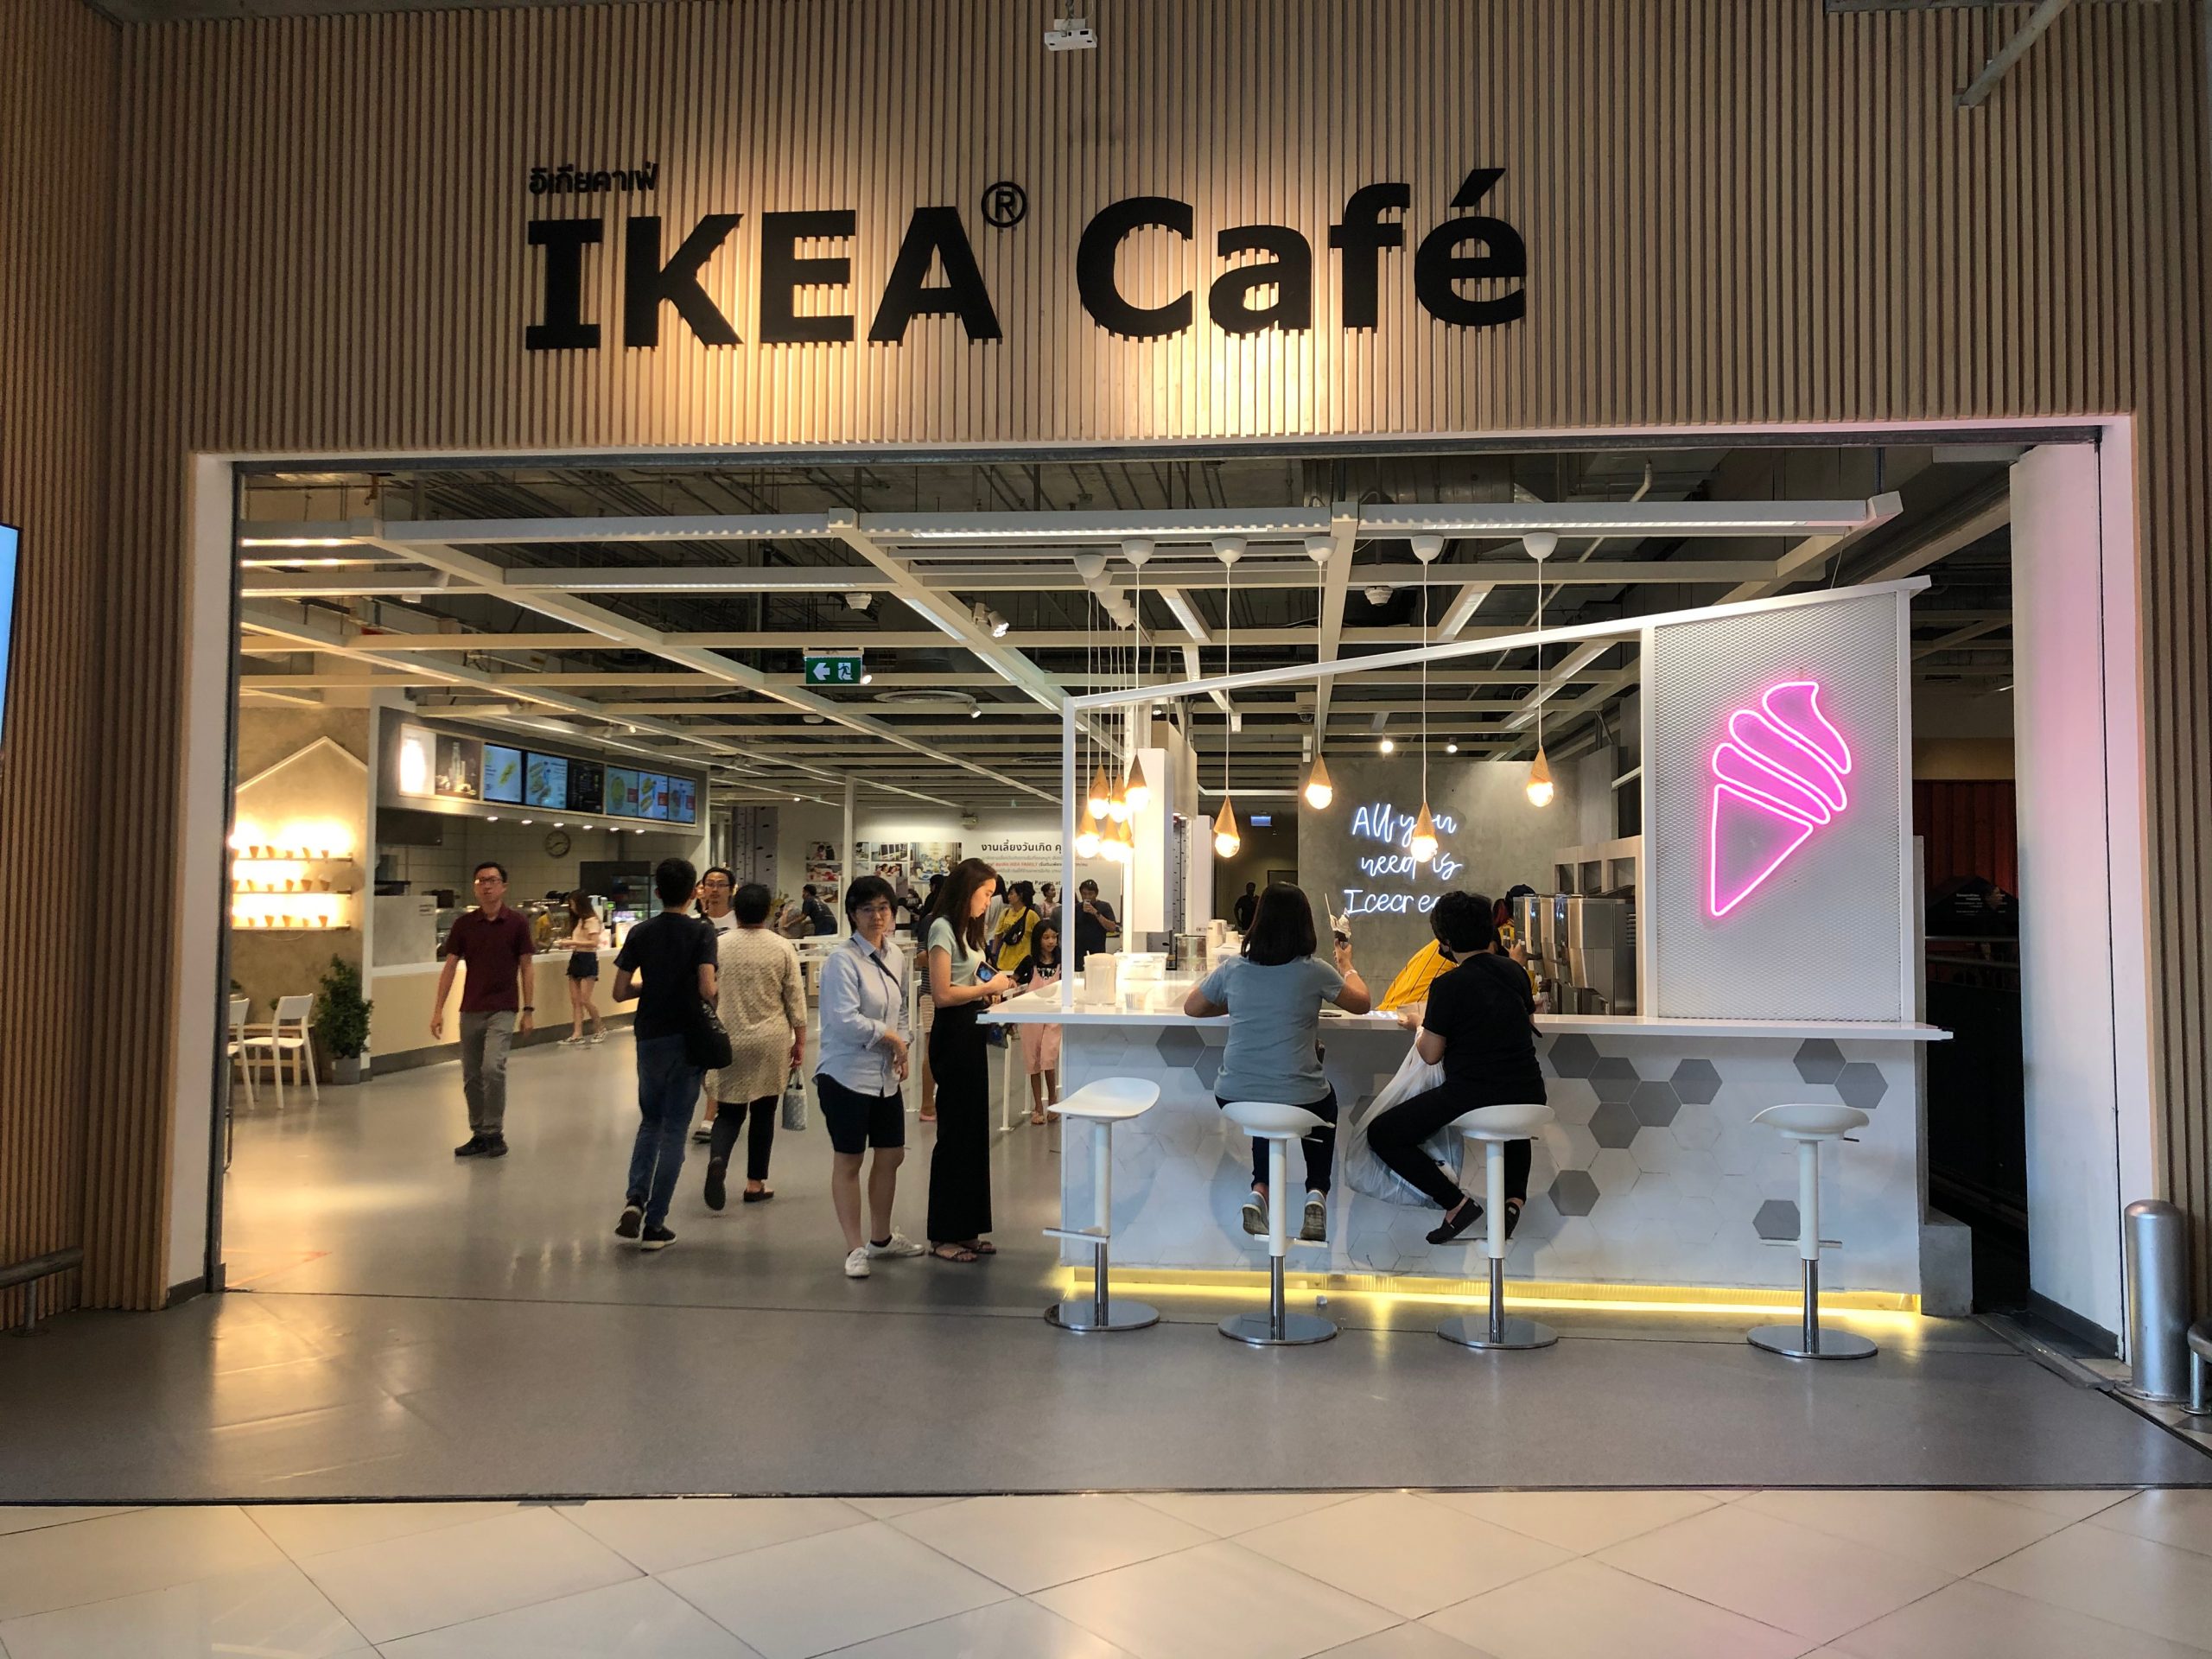 Ikea cafe